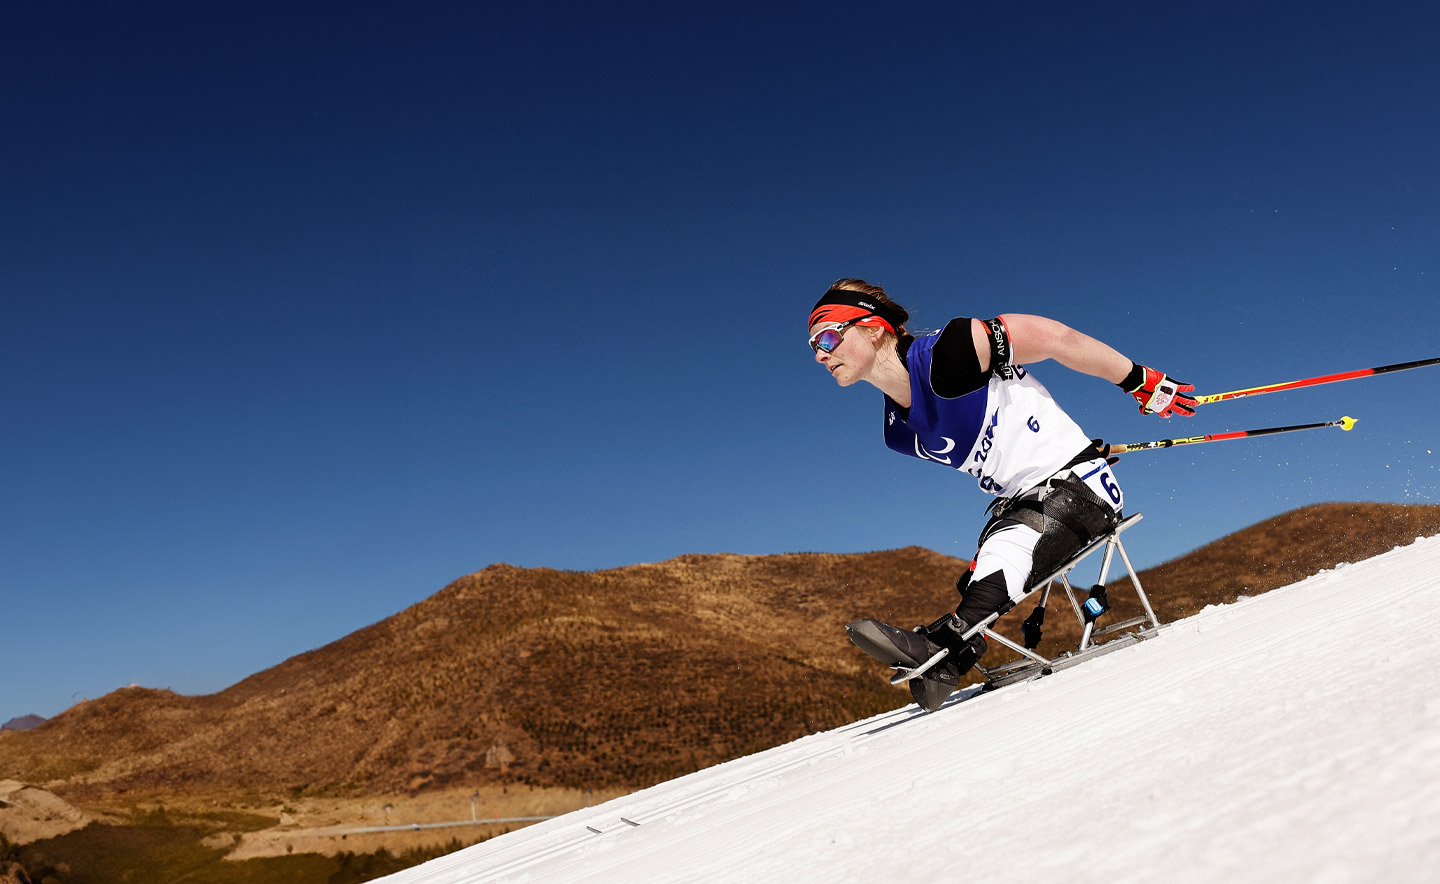 Christina Picton de l'équipe du Canada participe au Biathlon paralympique féminin distance moyenne en position assise lors du quatrième jour des Jeux paralympiques d'hiver de Beijing 2022 le 8 mars 2022 à Zhangjiakou, Chine.